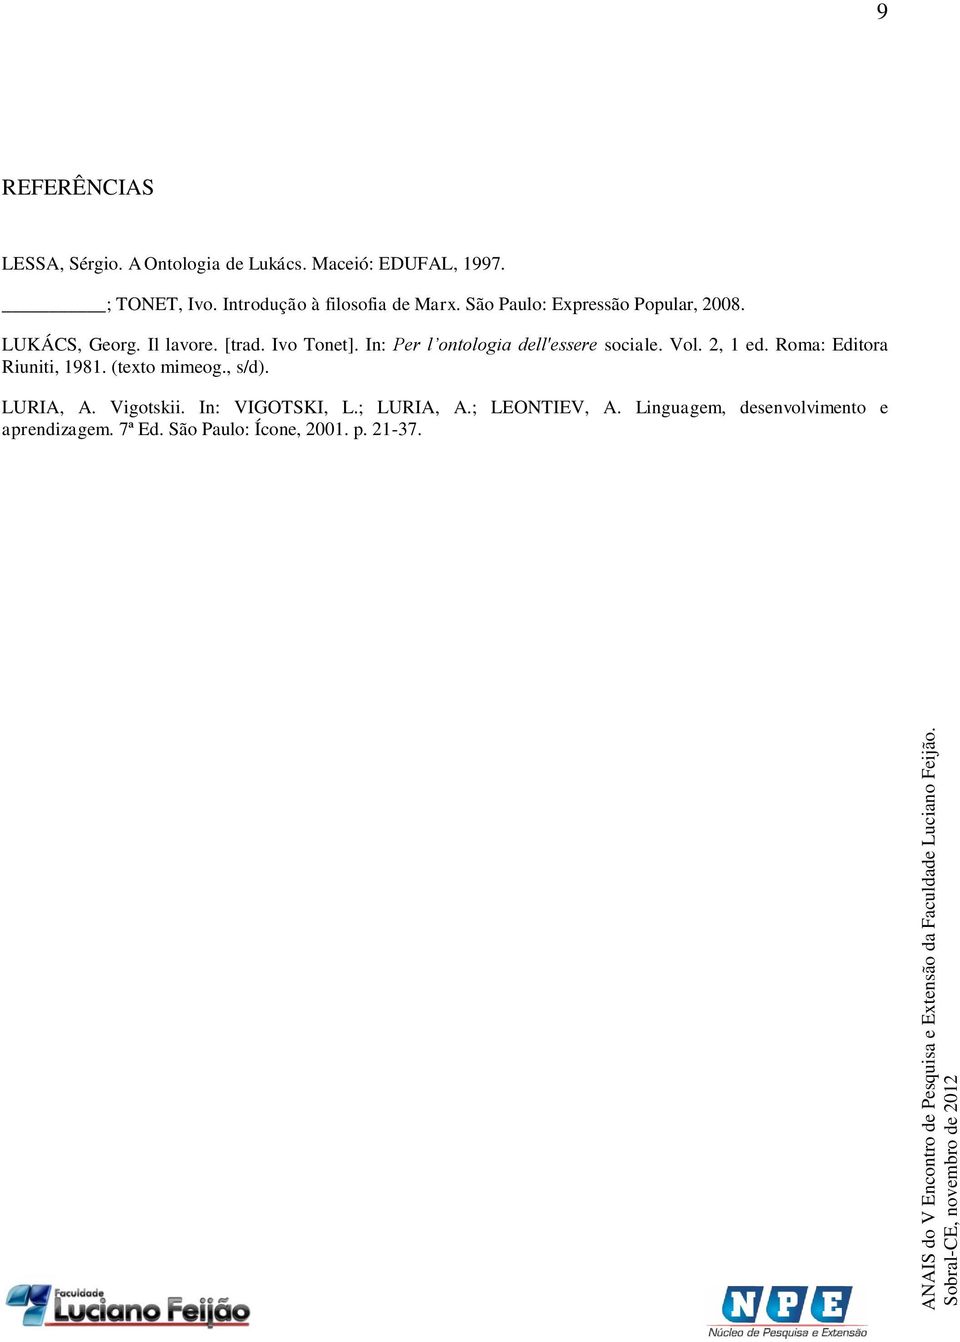 In: Per l ontologia dell'essere sociale. Vol. 2, 1 ed. Roma: Editora Riuniti, 1981. (texto mimeog., s/d).